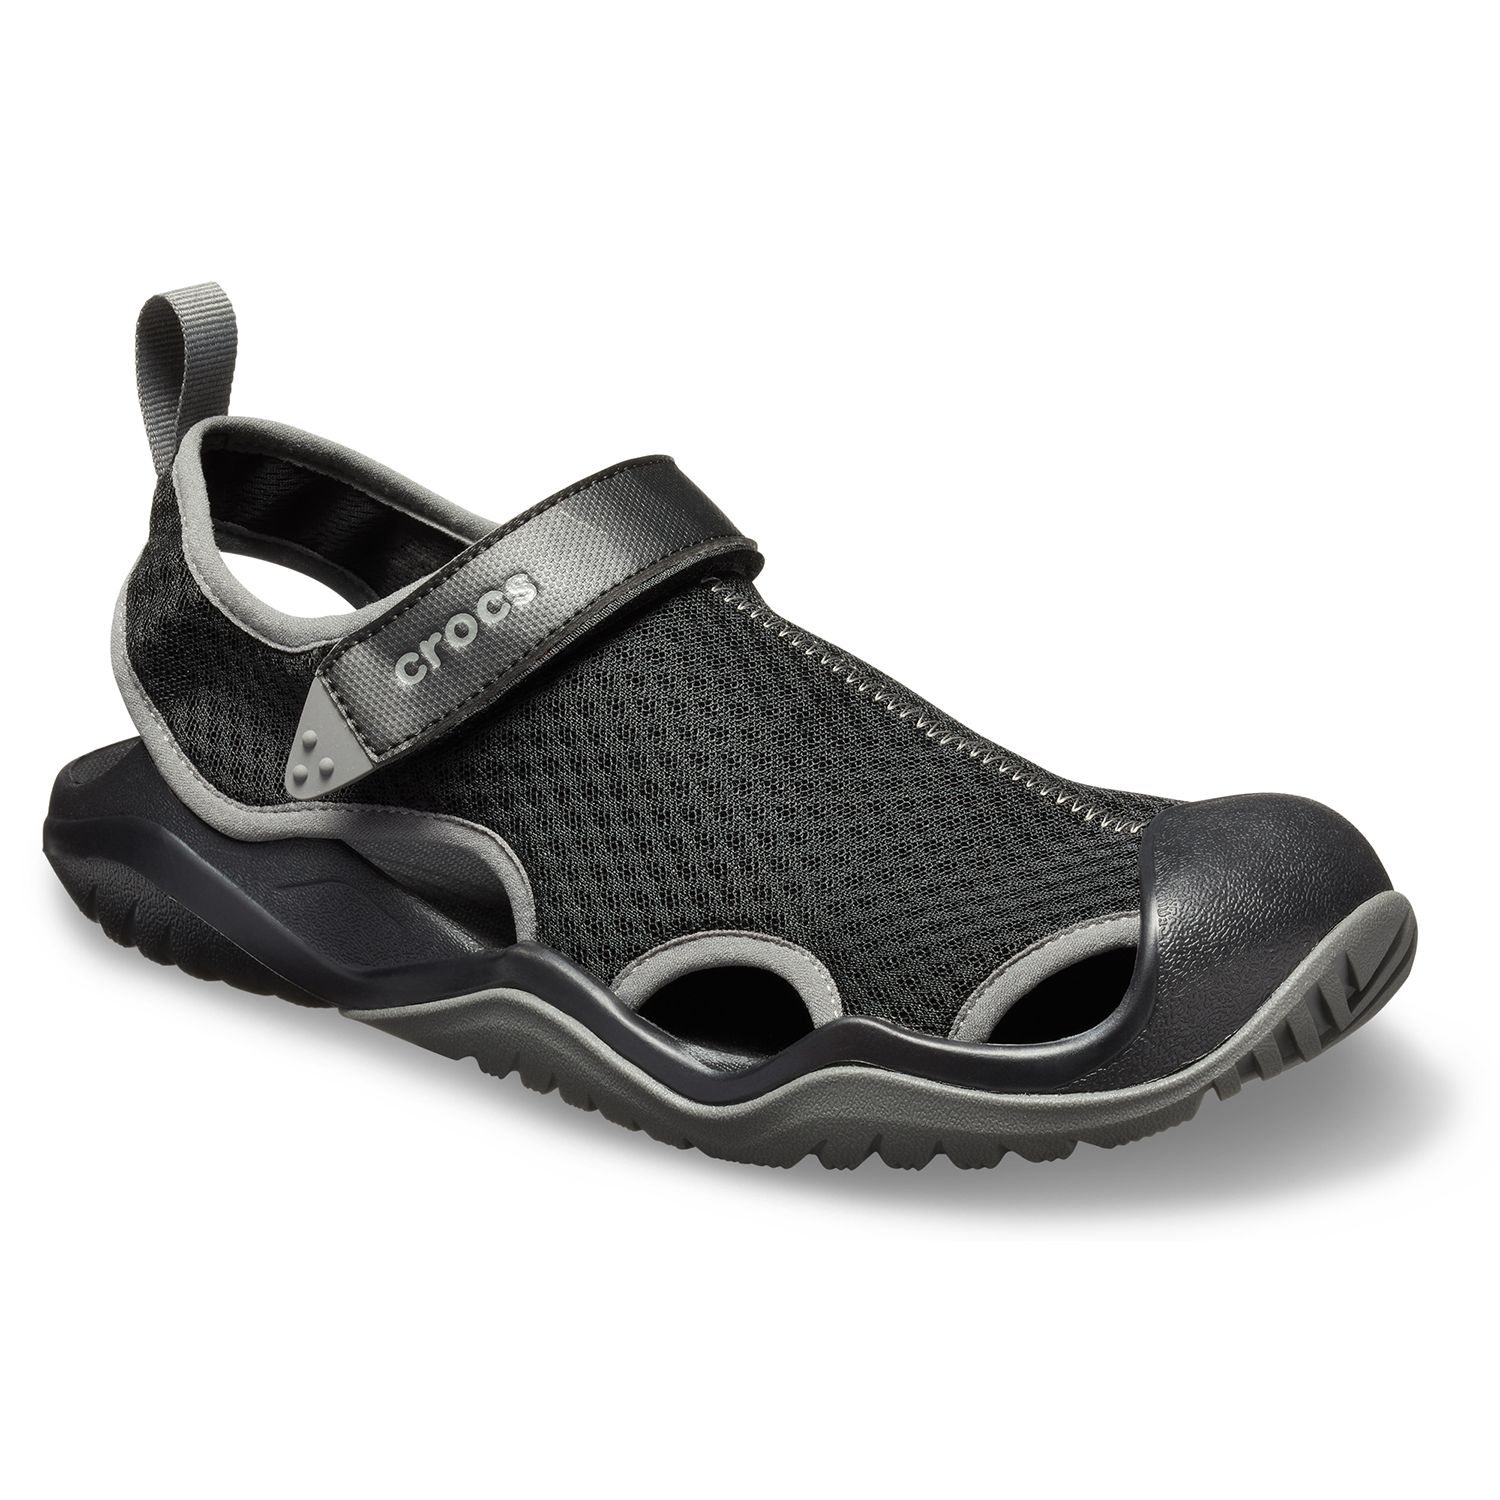 crocs mens sandals offers